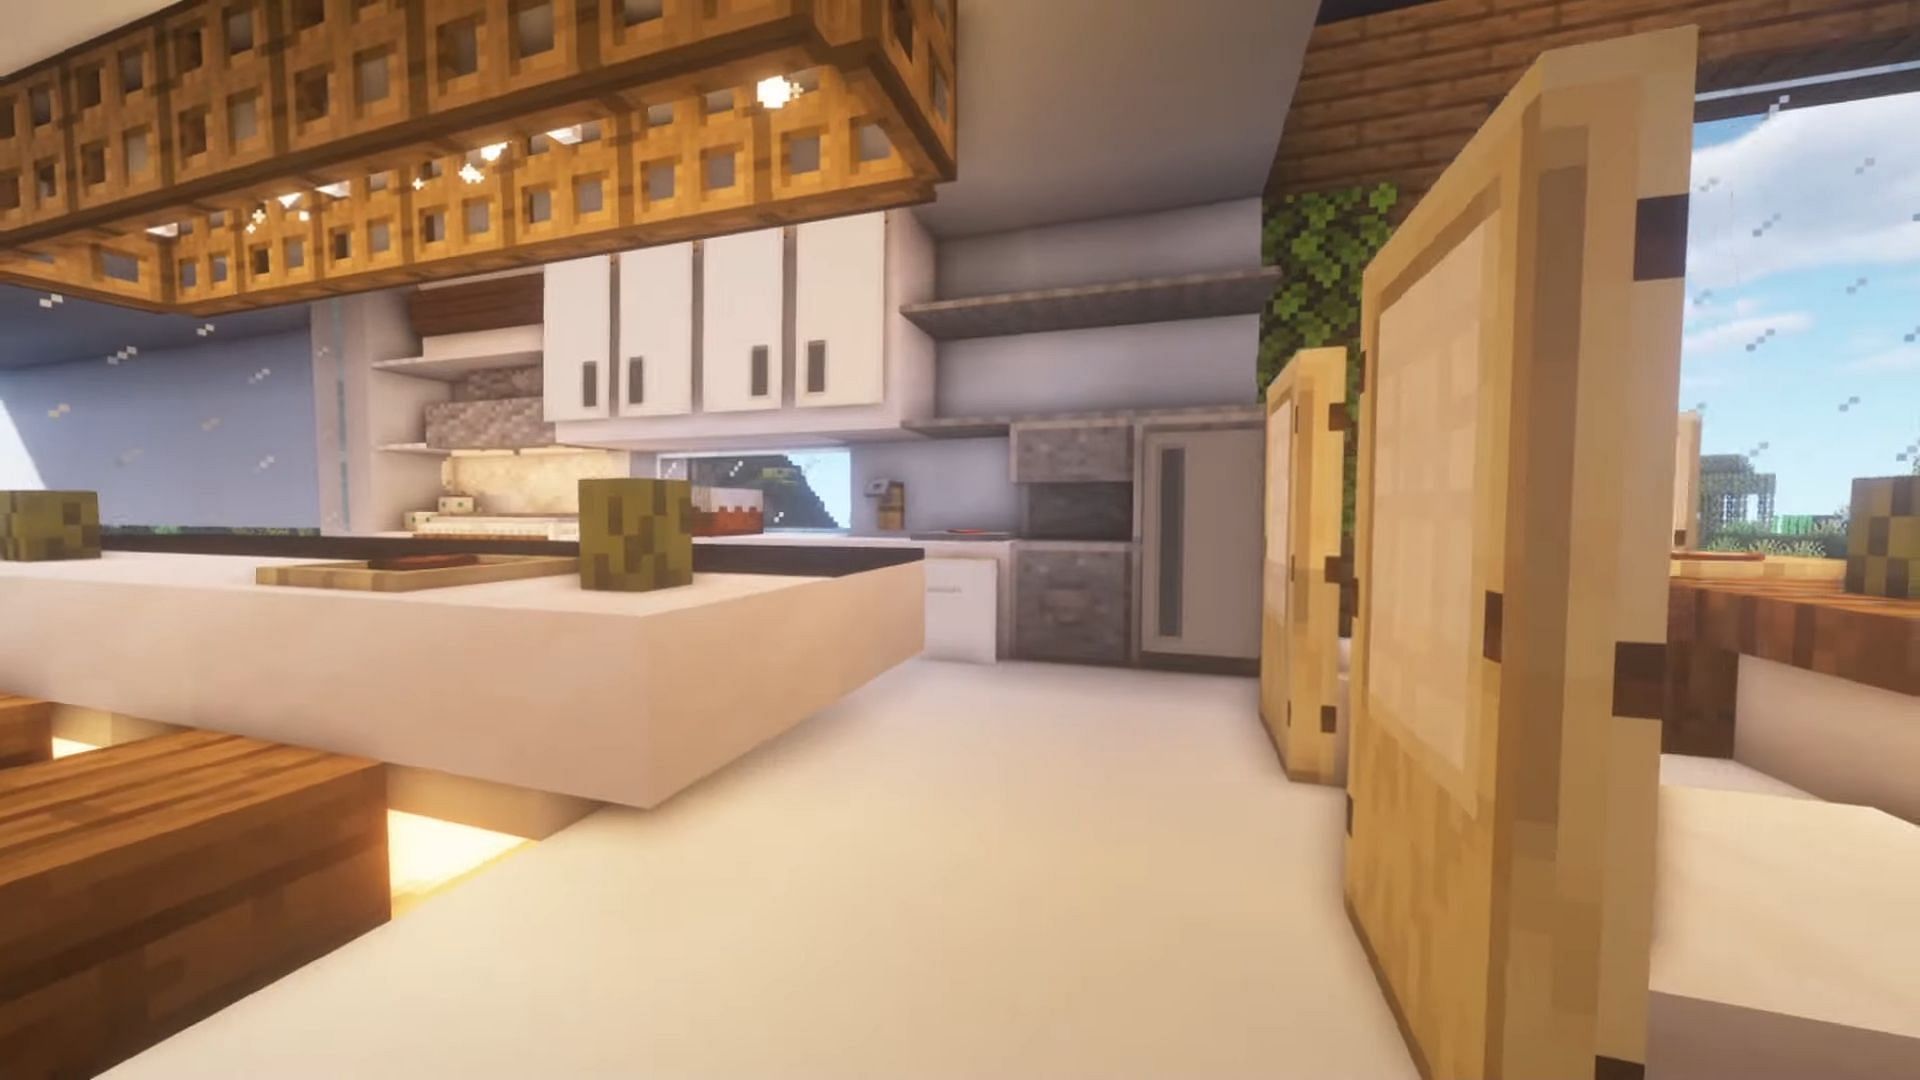 minecraft kitchen